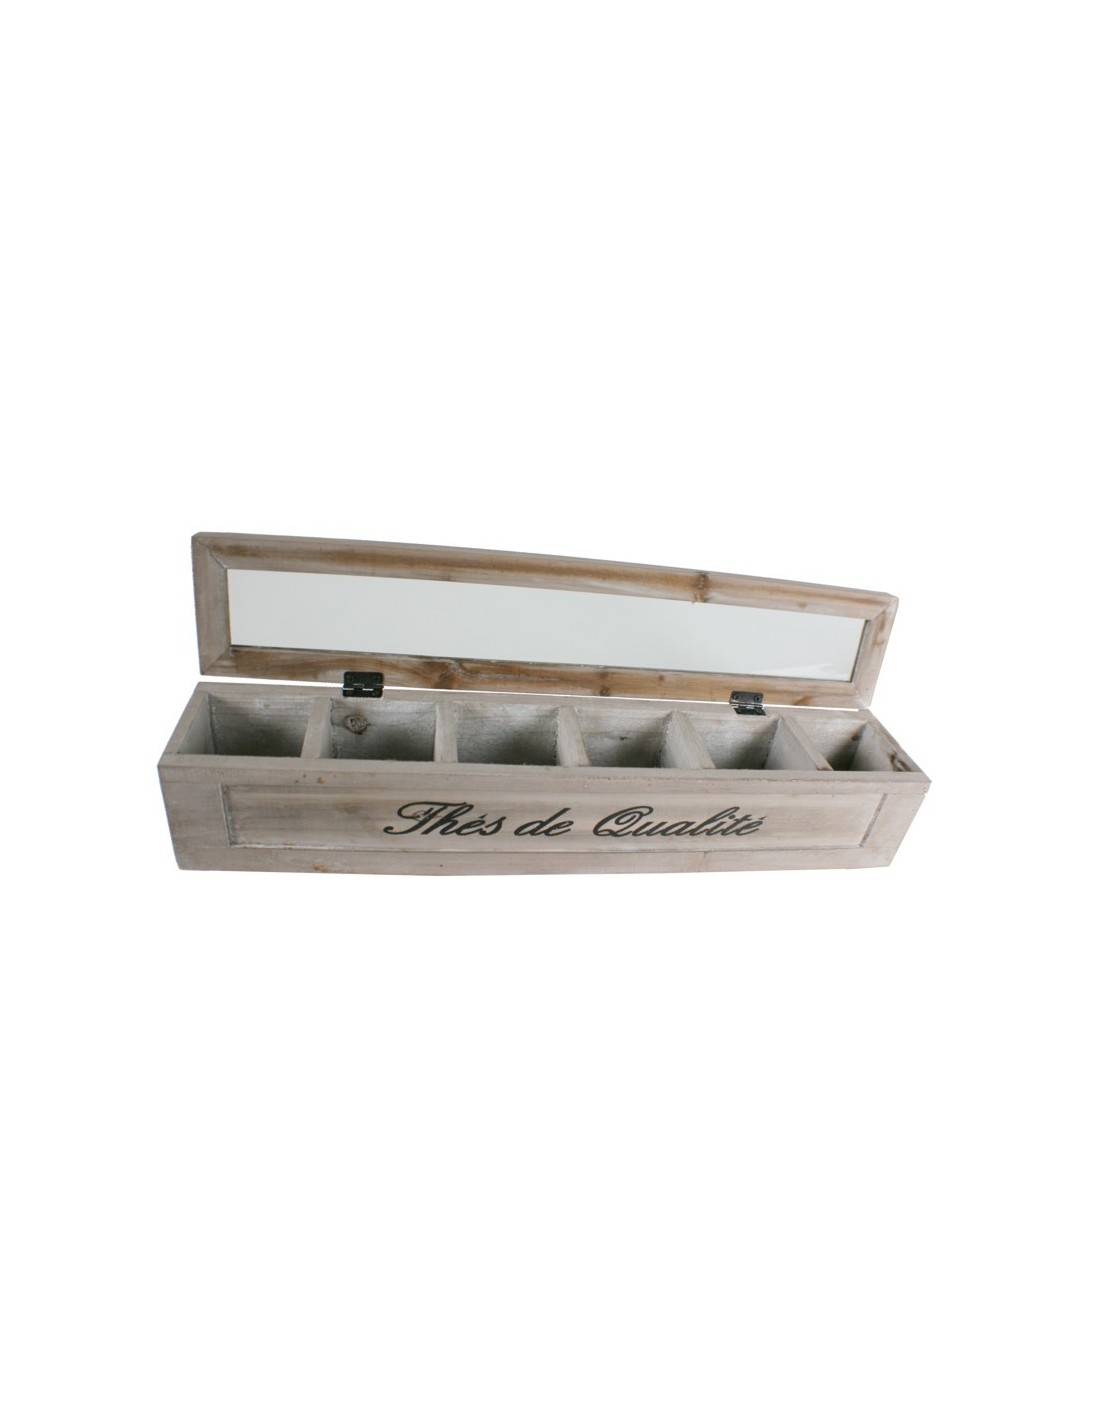 Caja de madera con 6 separadores en interior para bolsitas de thé e infusiones Caja de madera estilo vintage tapa transparente m